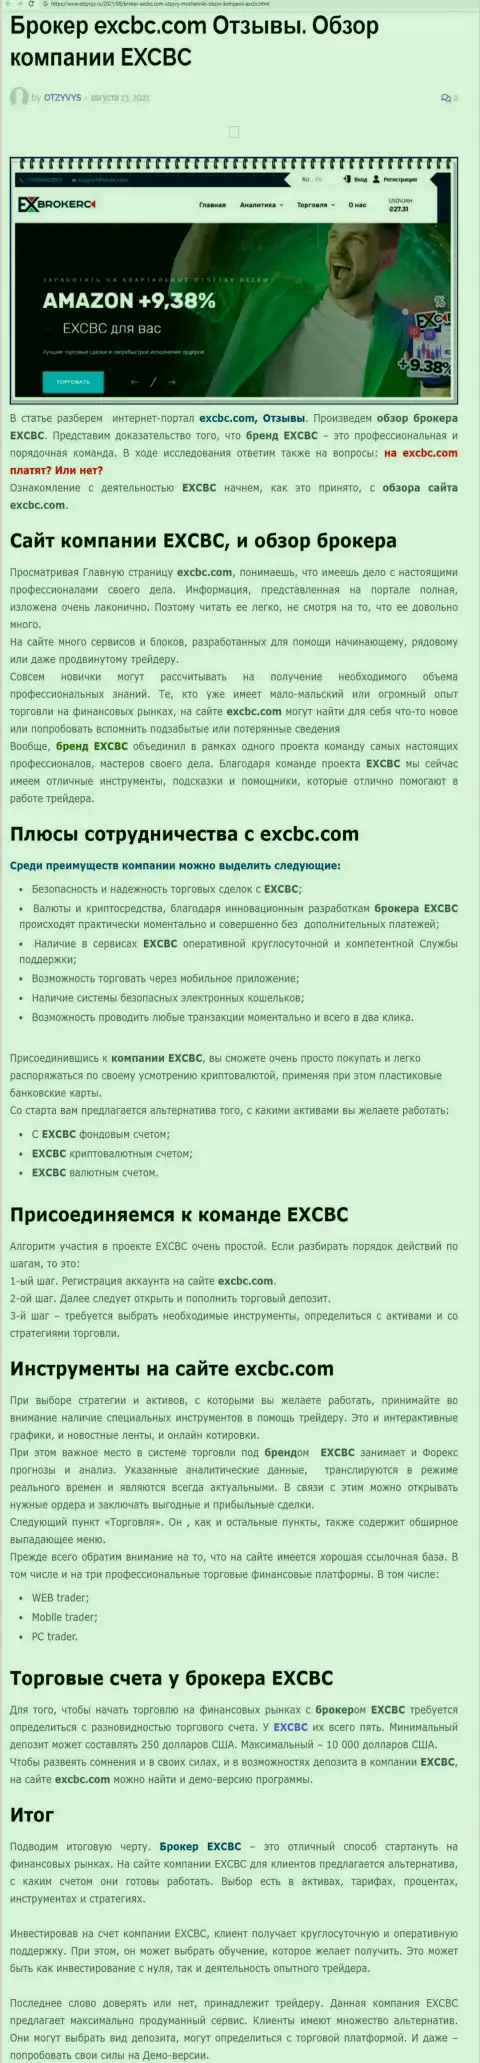 Обзорный материал о ФОРЕКС компании EXBrokerc на сайте Отзывс Ру